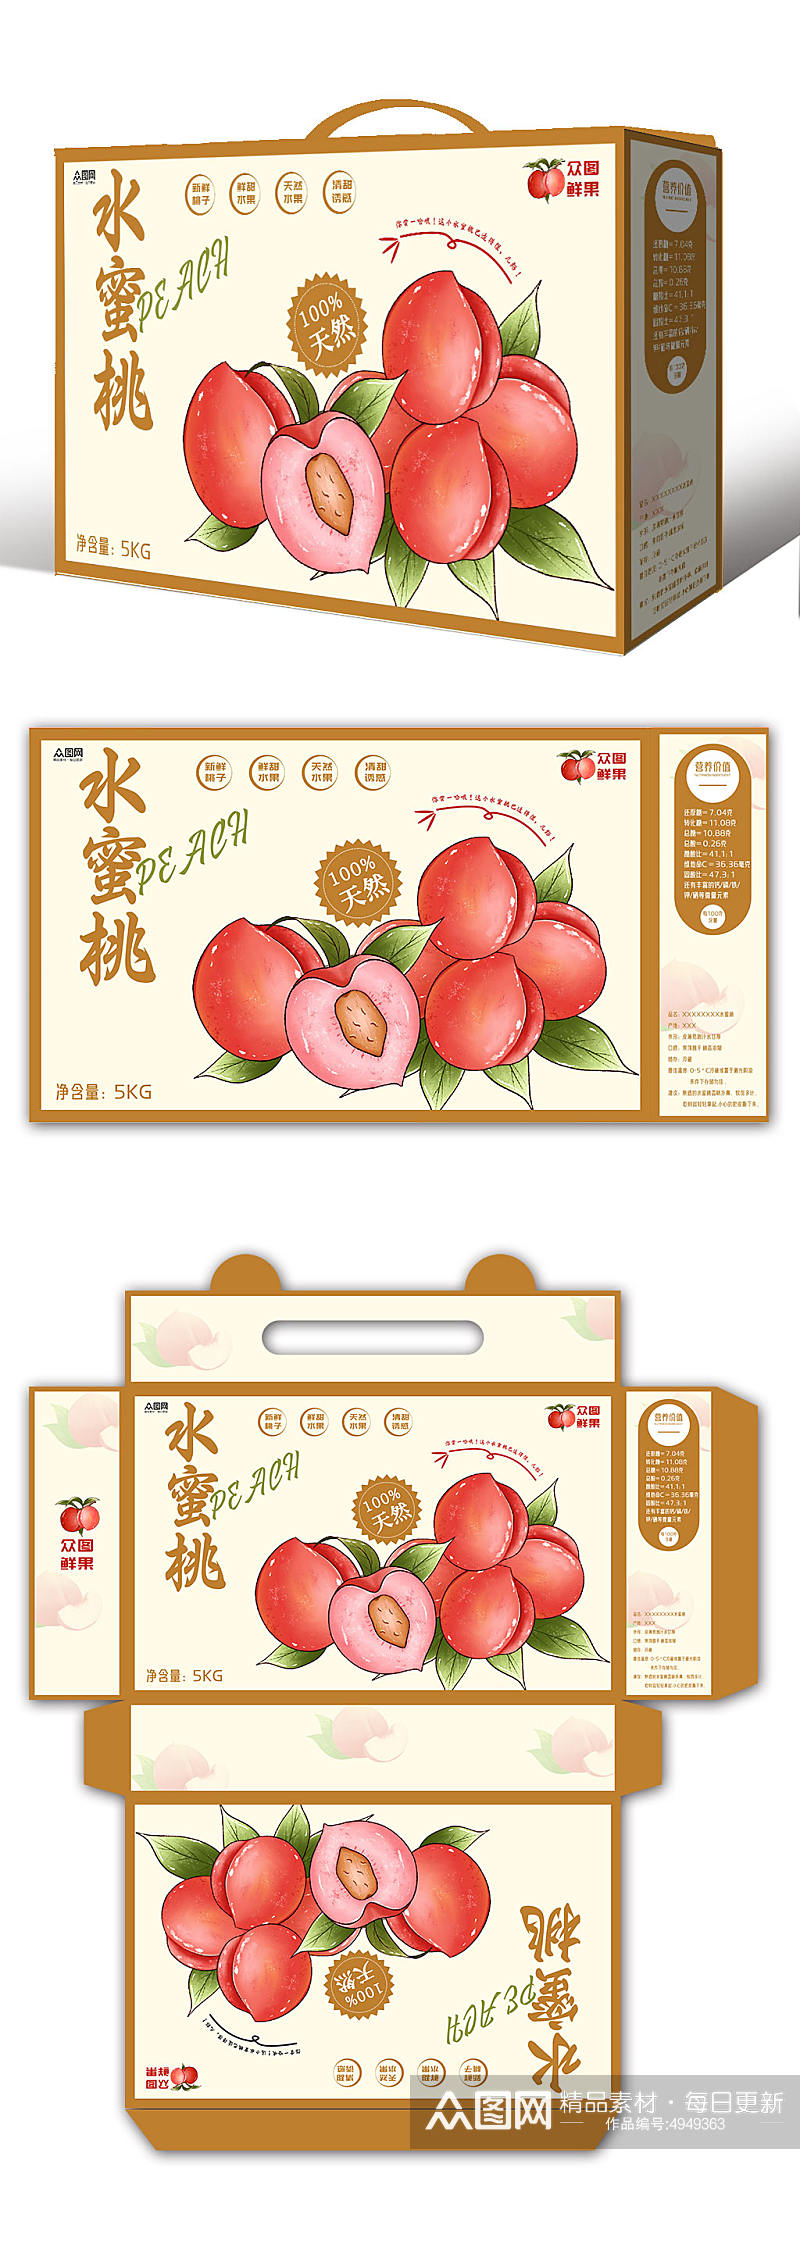 新鲜桃子水蜜桃水果礼盒包装设计素材